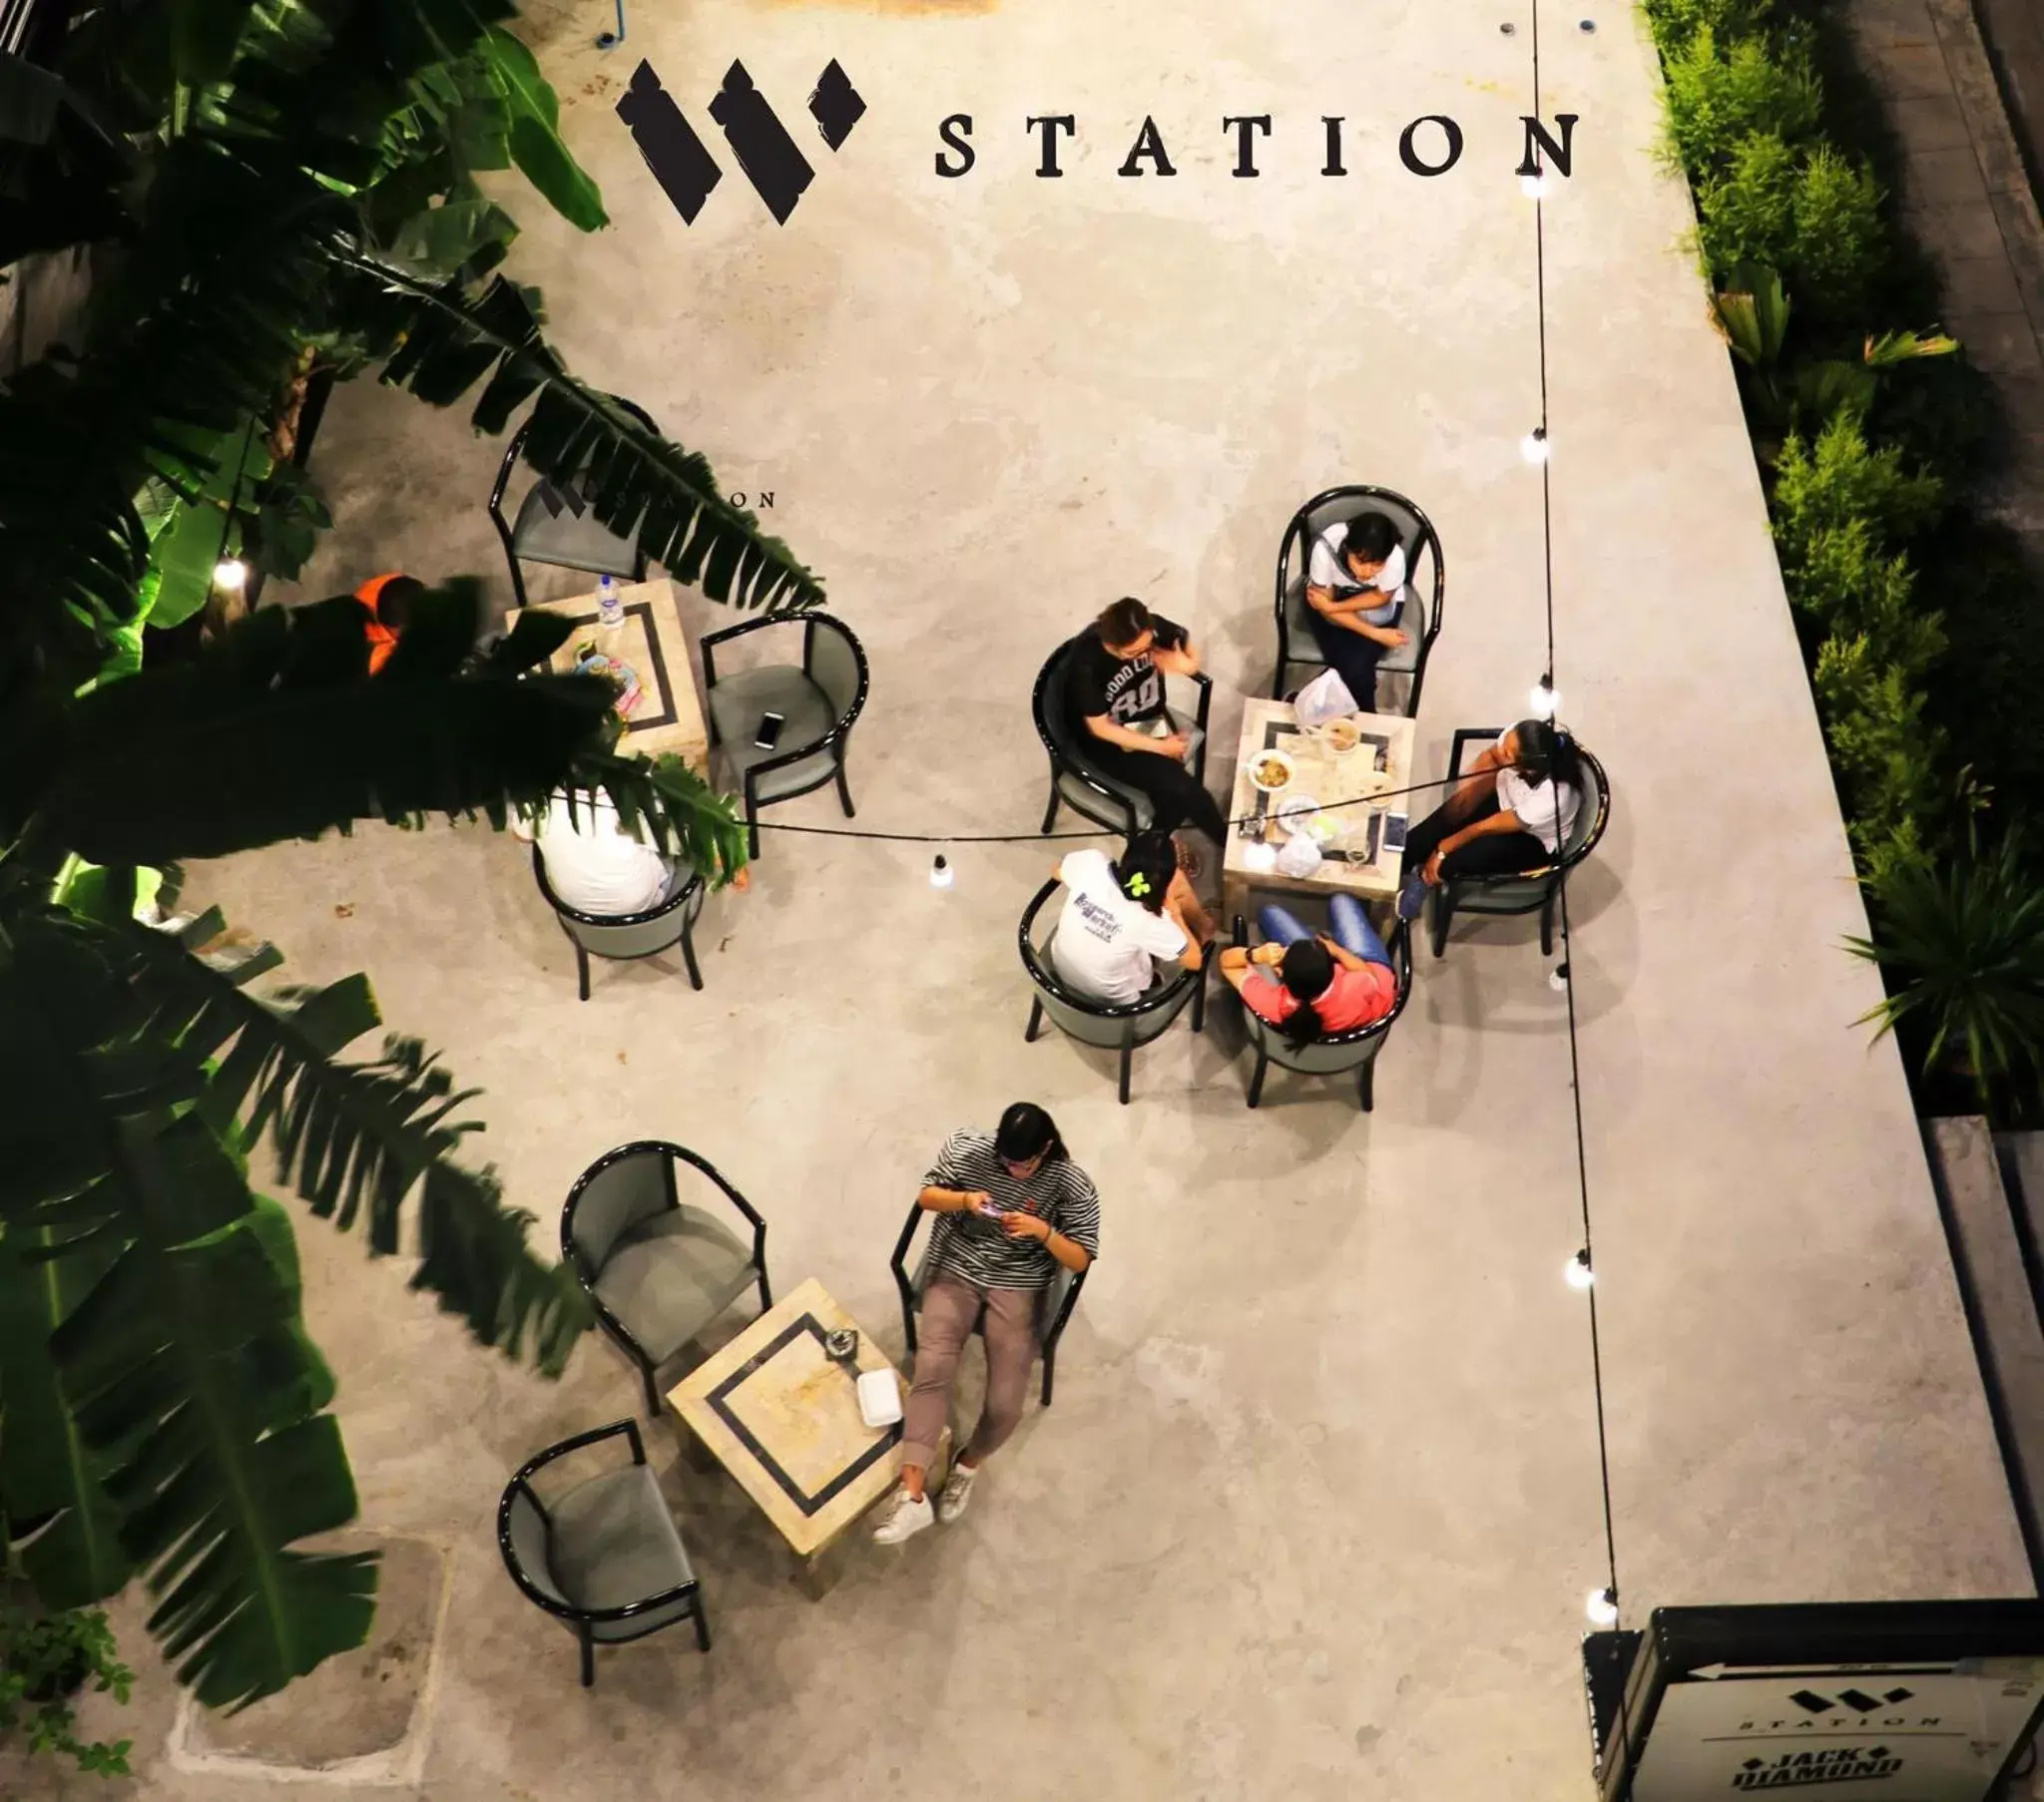 W Station